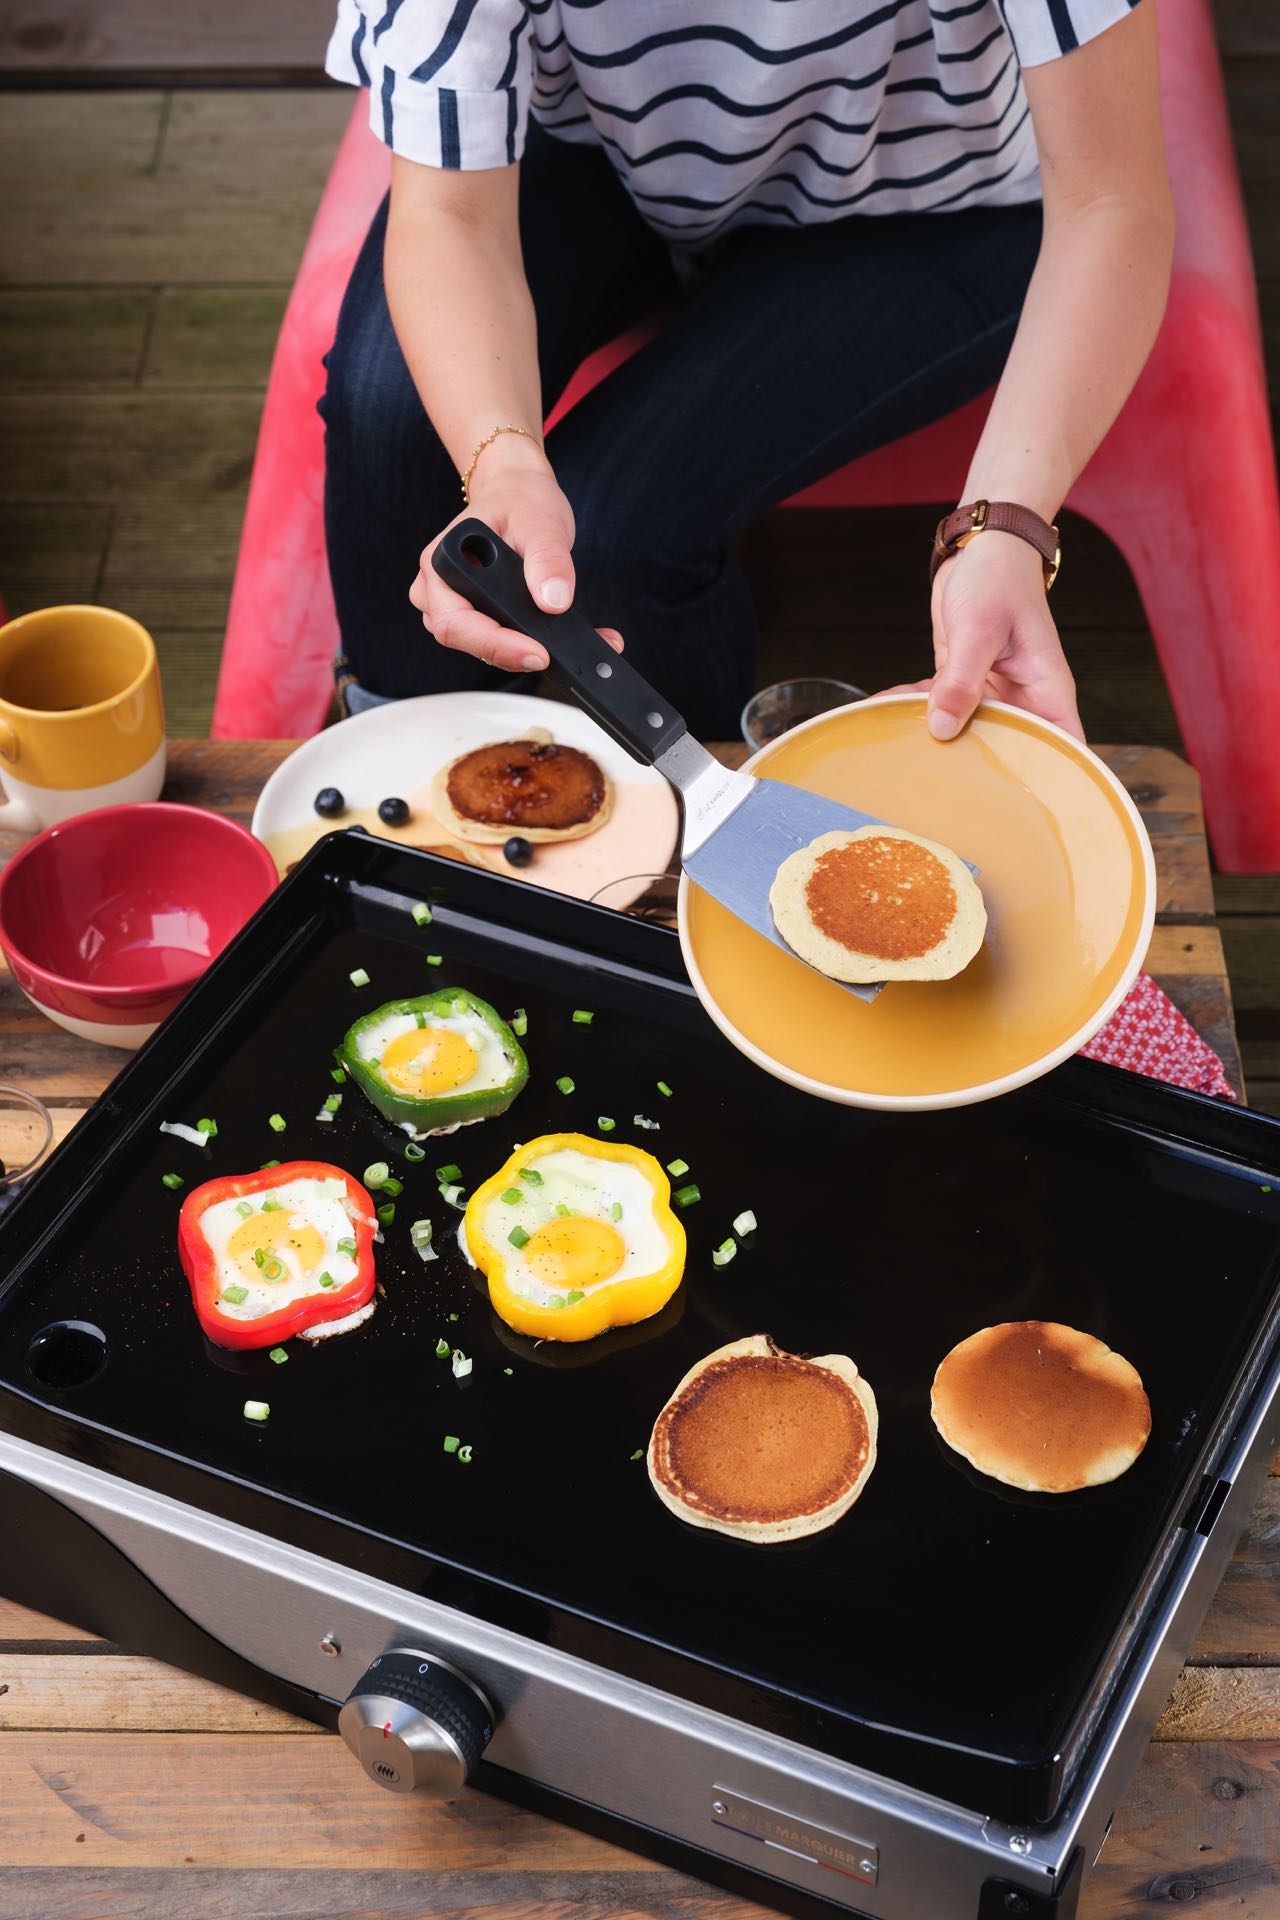 Do it yourself: Bereiten Sie Pancake Teig vor oder auch Zutaten für andere Speisen, die sich auf einer Plancha garen lassen. Dann kann jeder Gast oder der Gastgeber die Dinge frisch anrichten. Plancha von de Buyer.